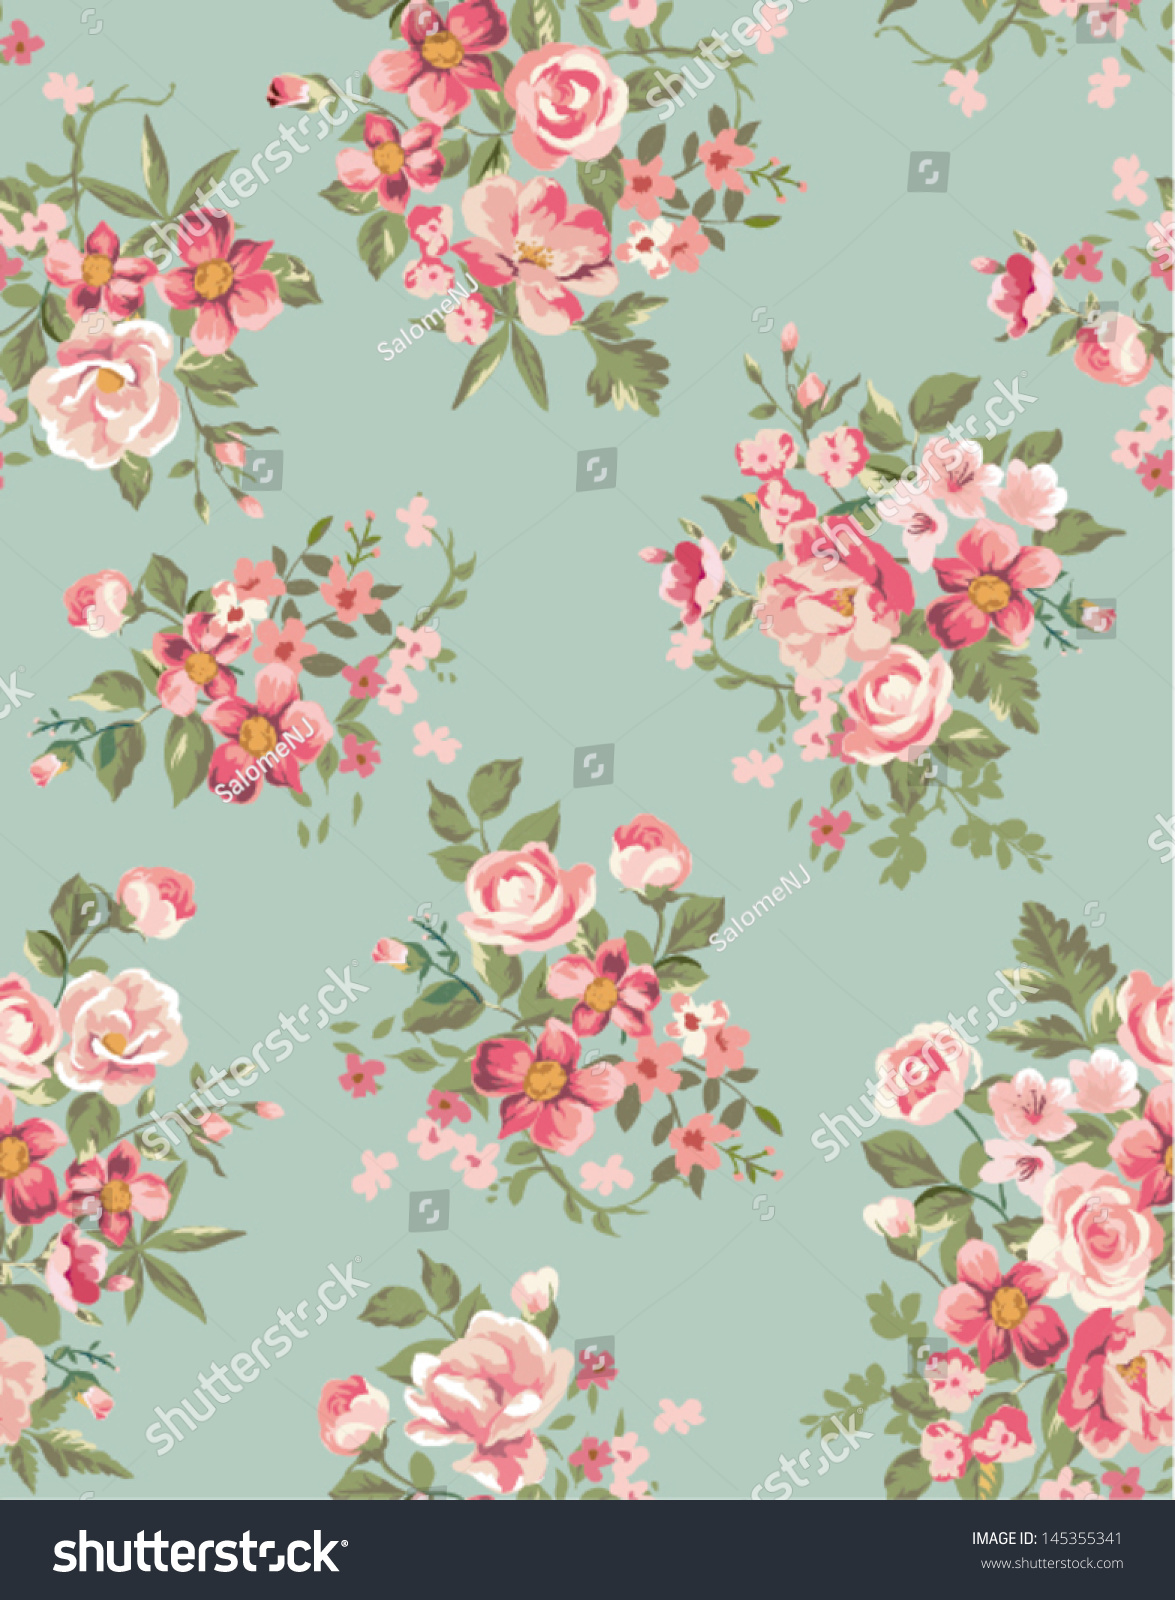 18+ Vintage Floral Wallpapers | Floral Patterns ...